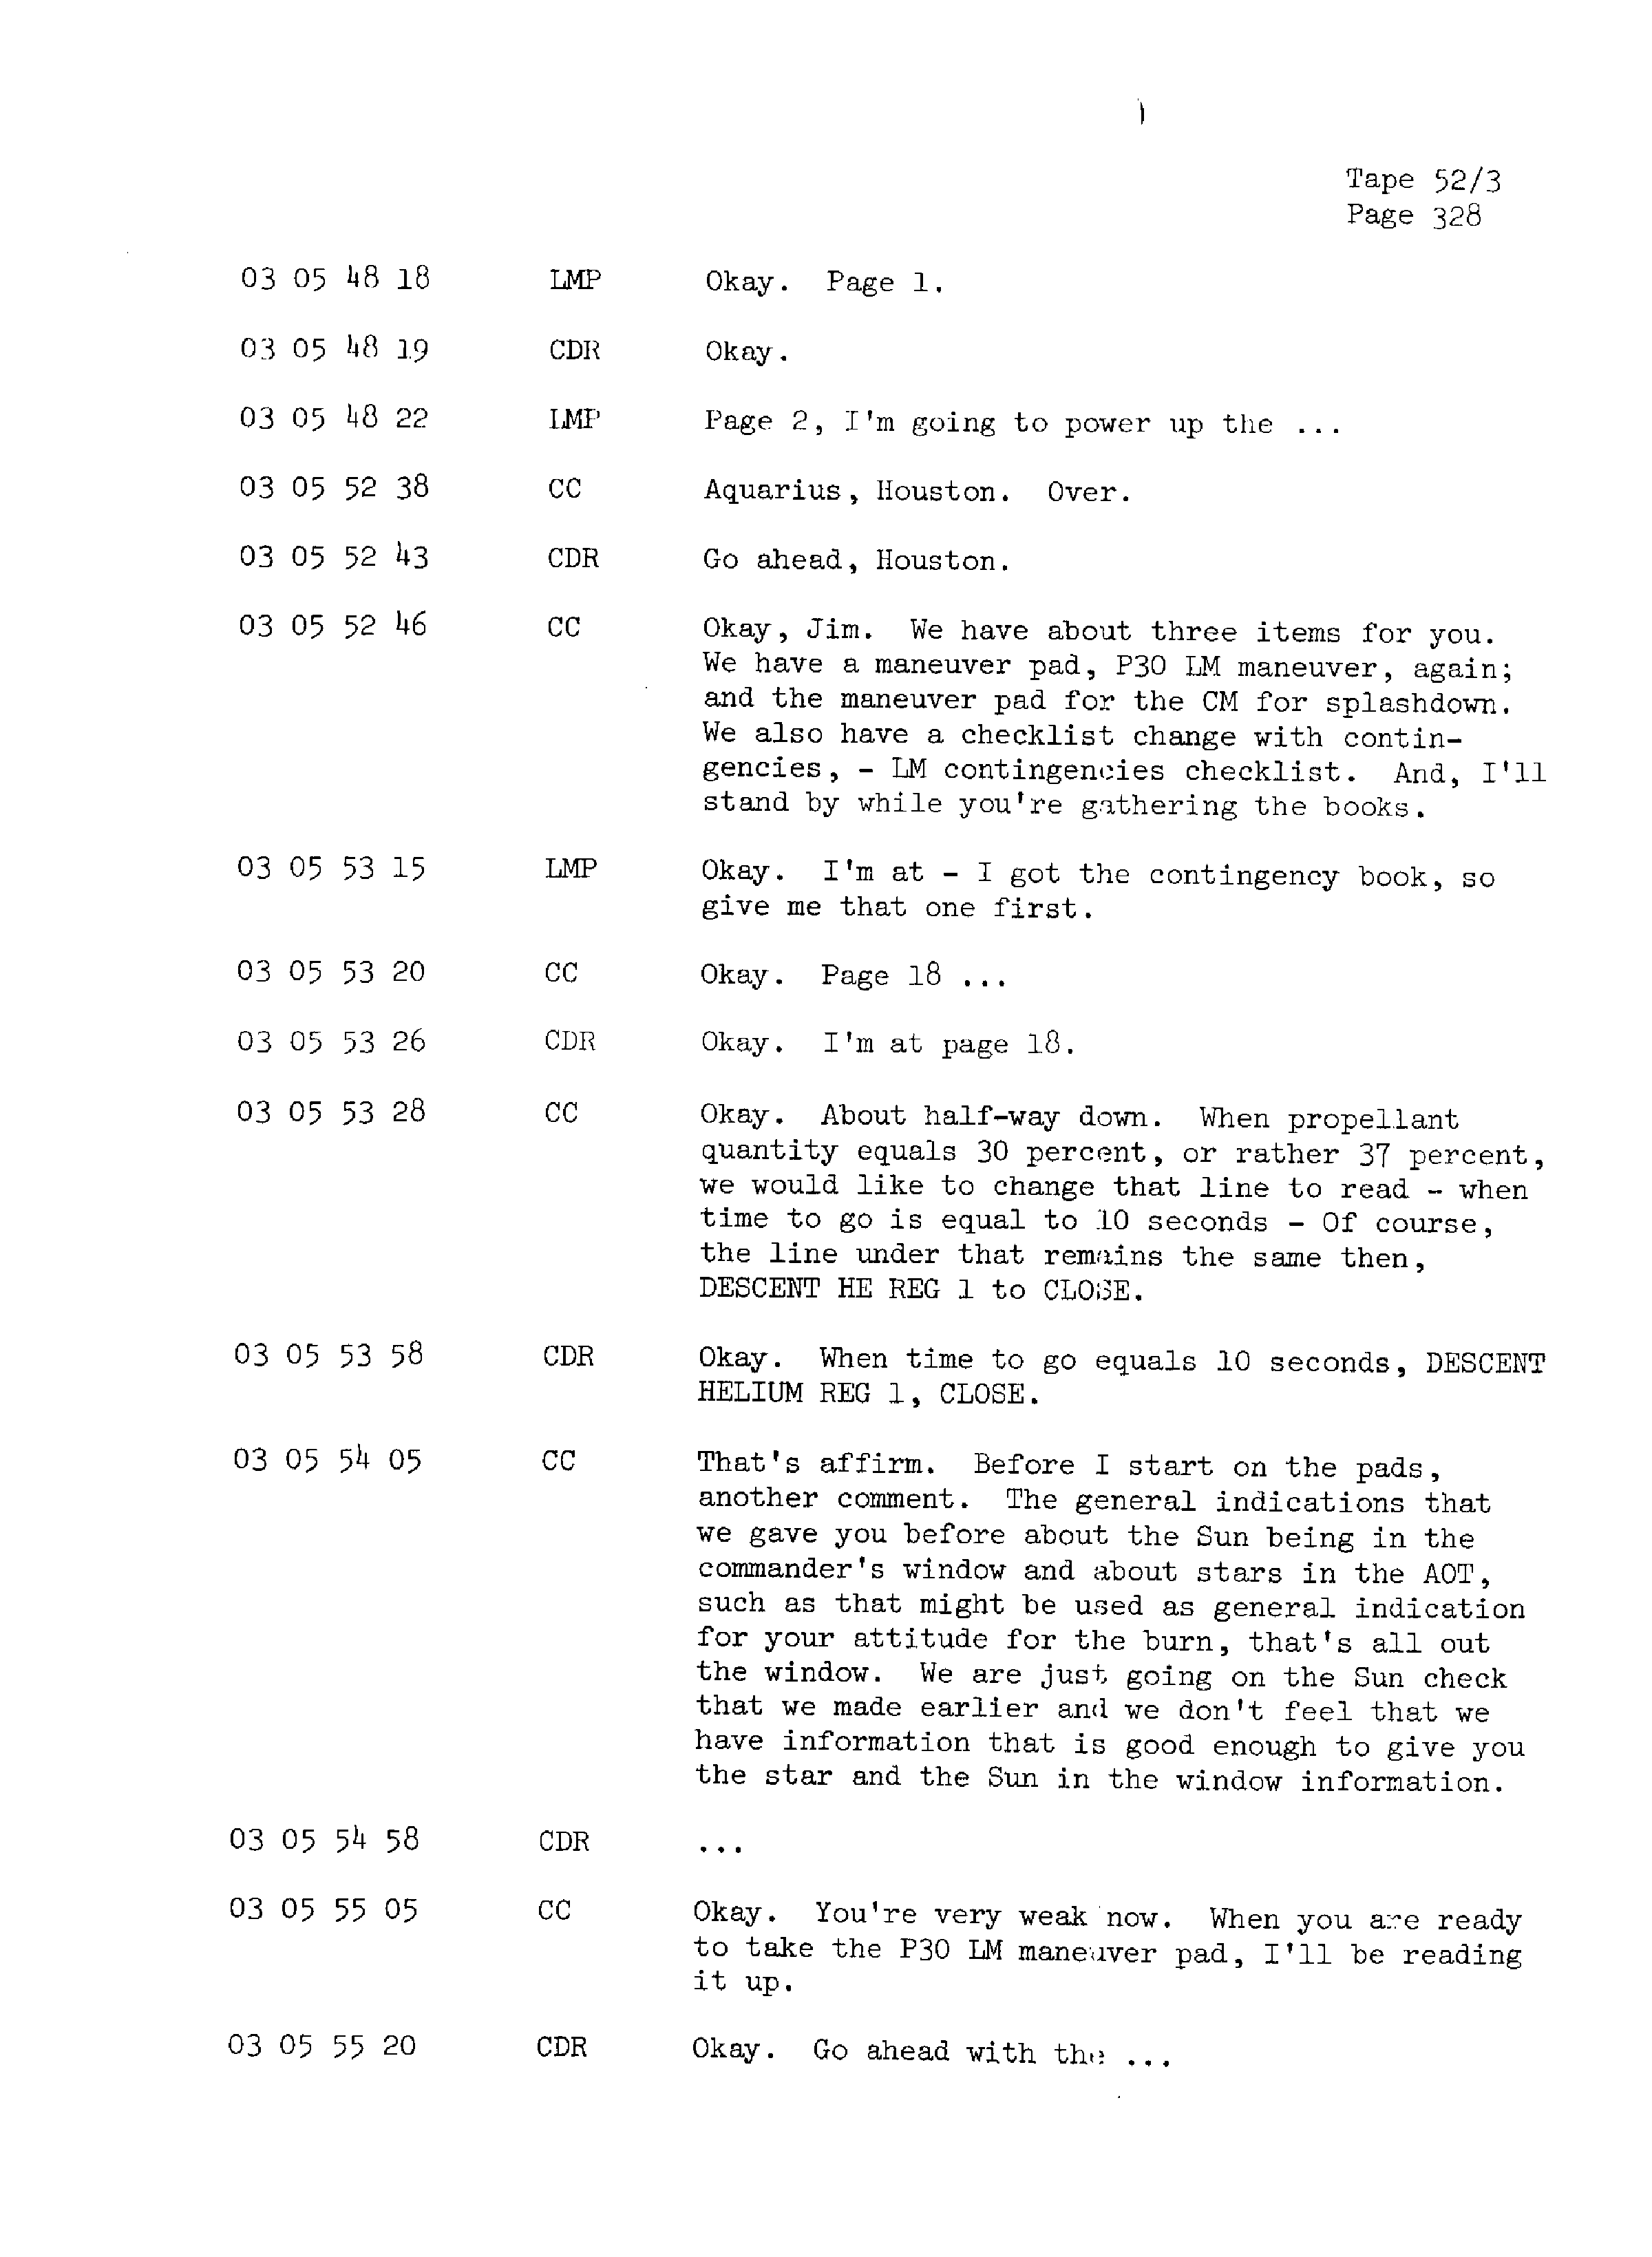 Page 335 of Apollo 13’s original transcript